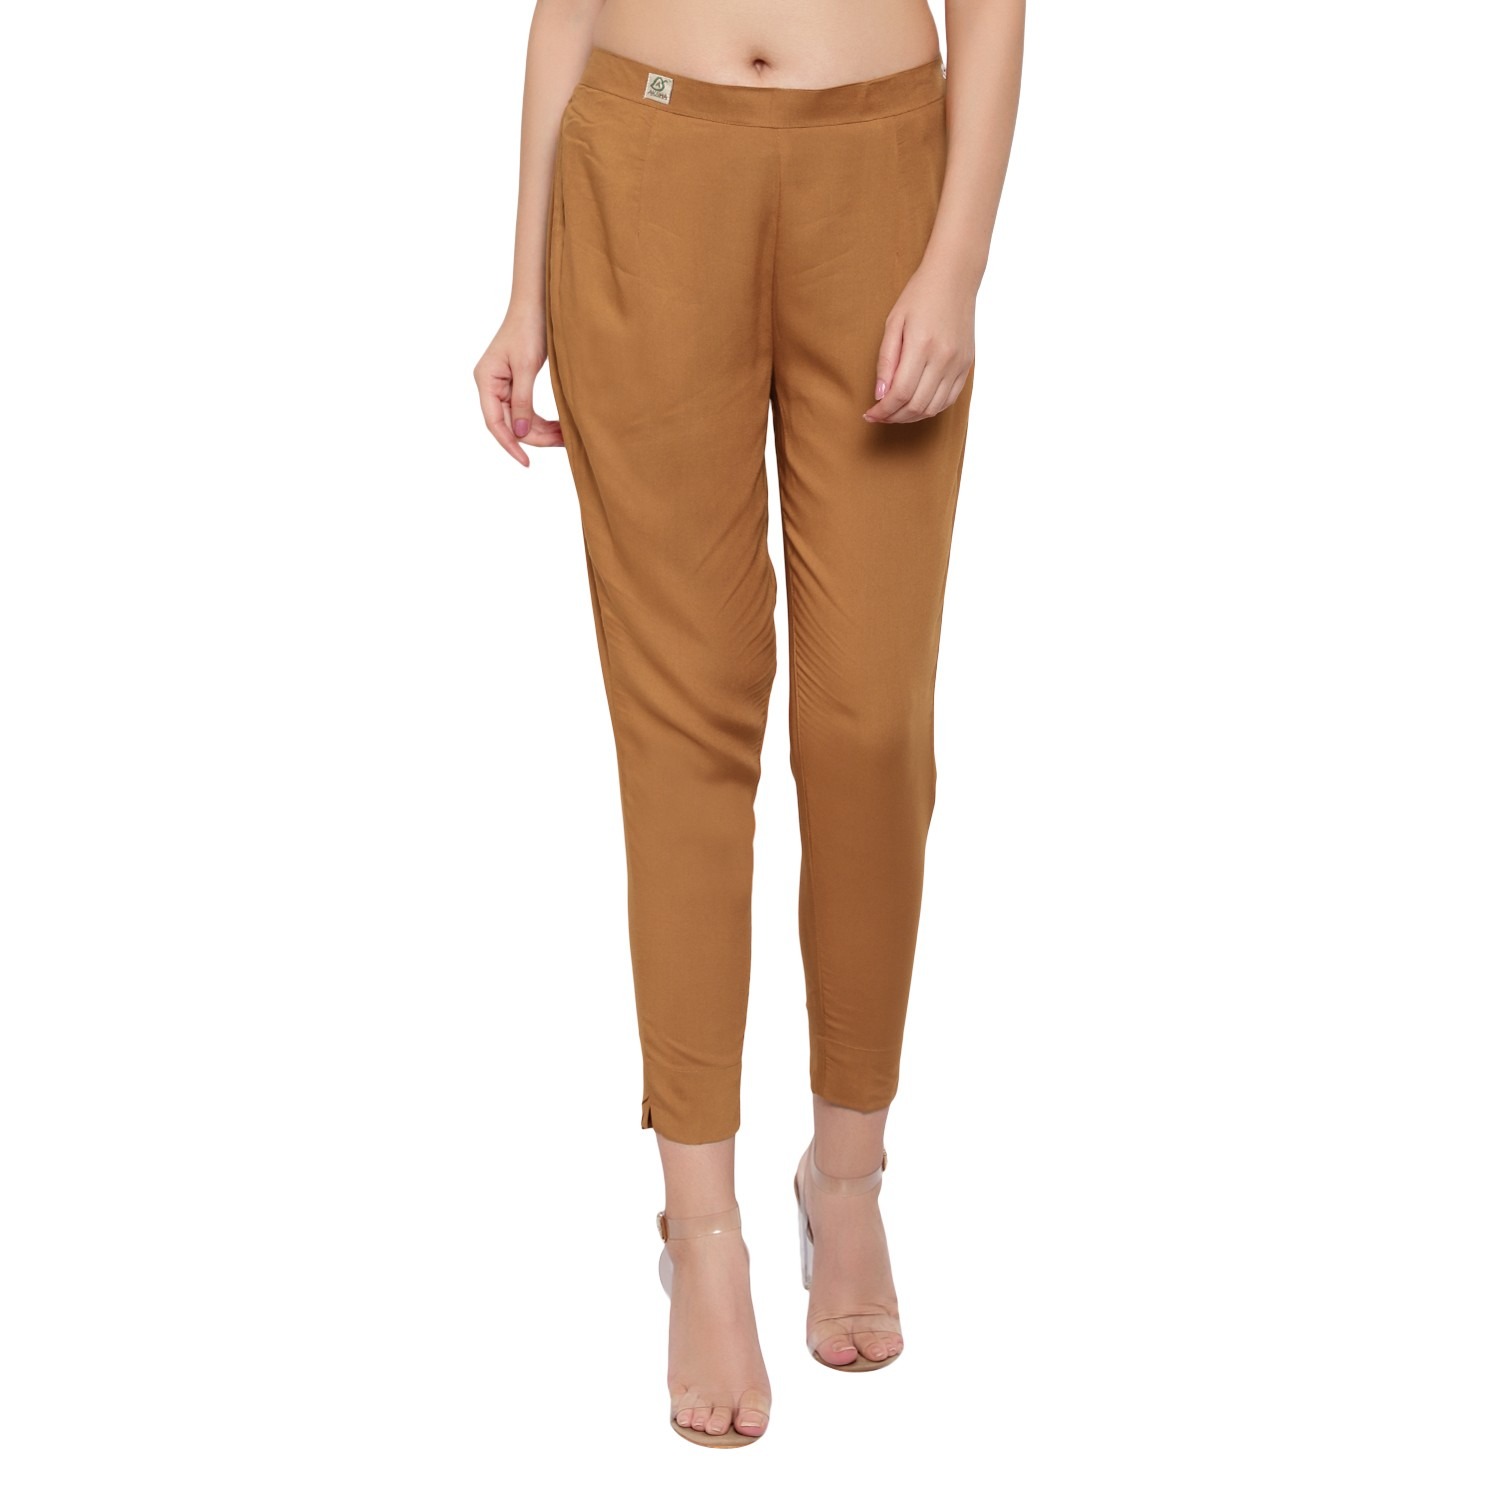 Buy Beige Trousers  Pants for Women by TRENDYOL Online  Ajiocom